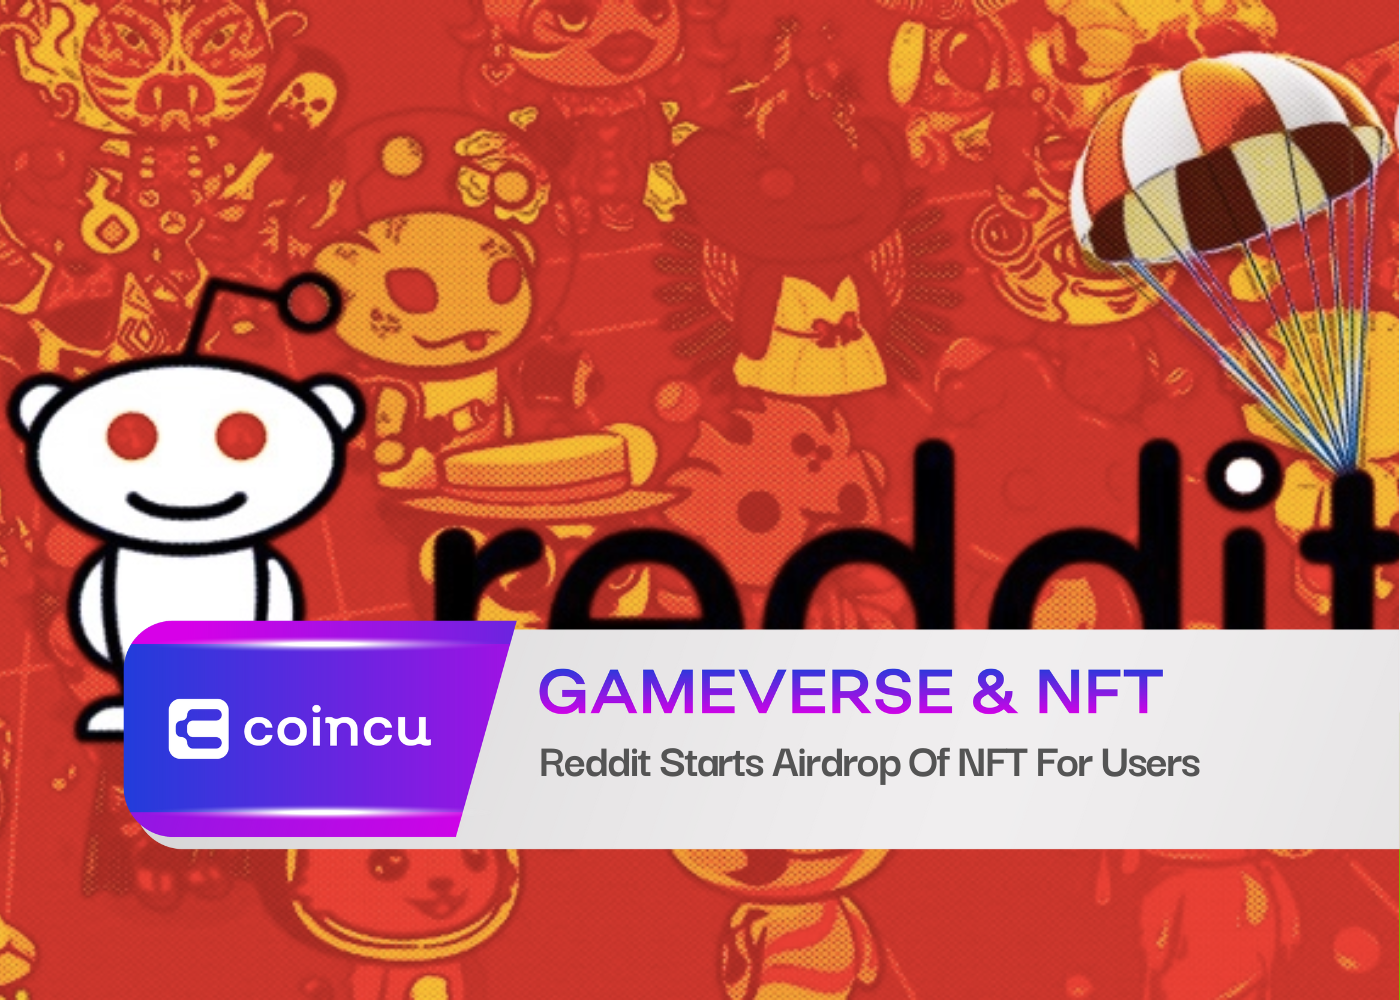 Reddit startet Airdrop von NFT für Benutzer